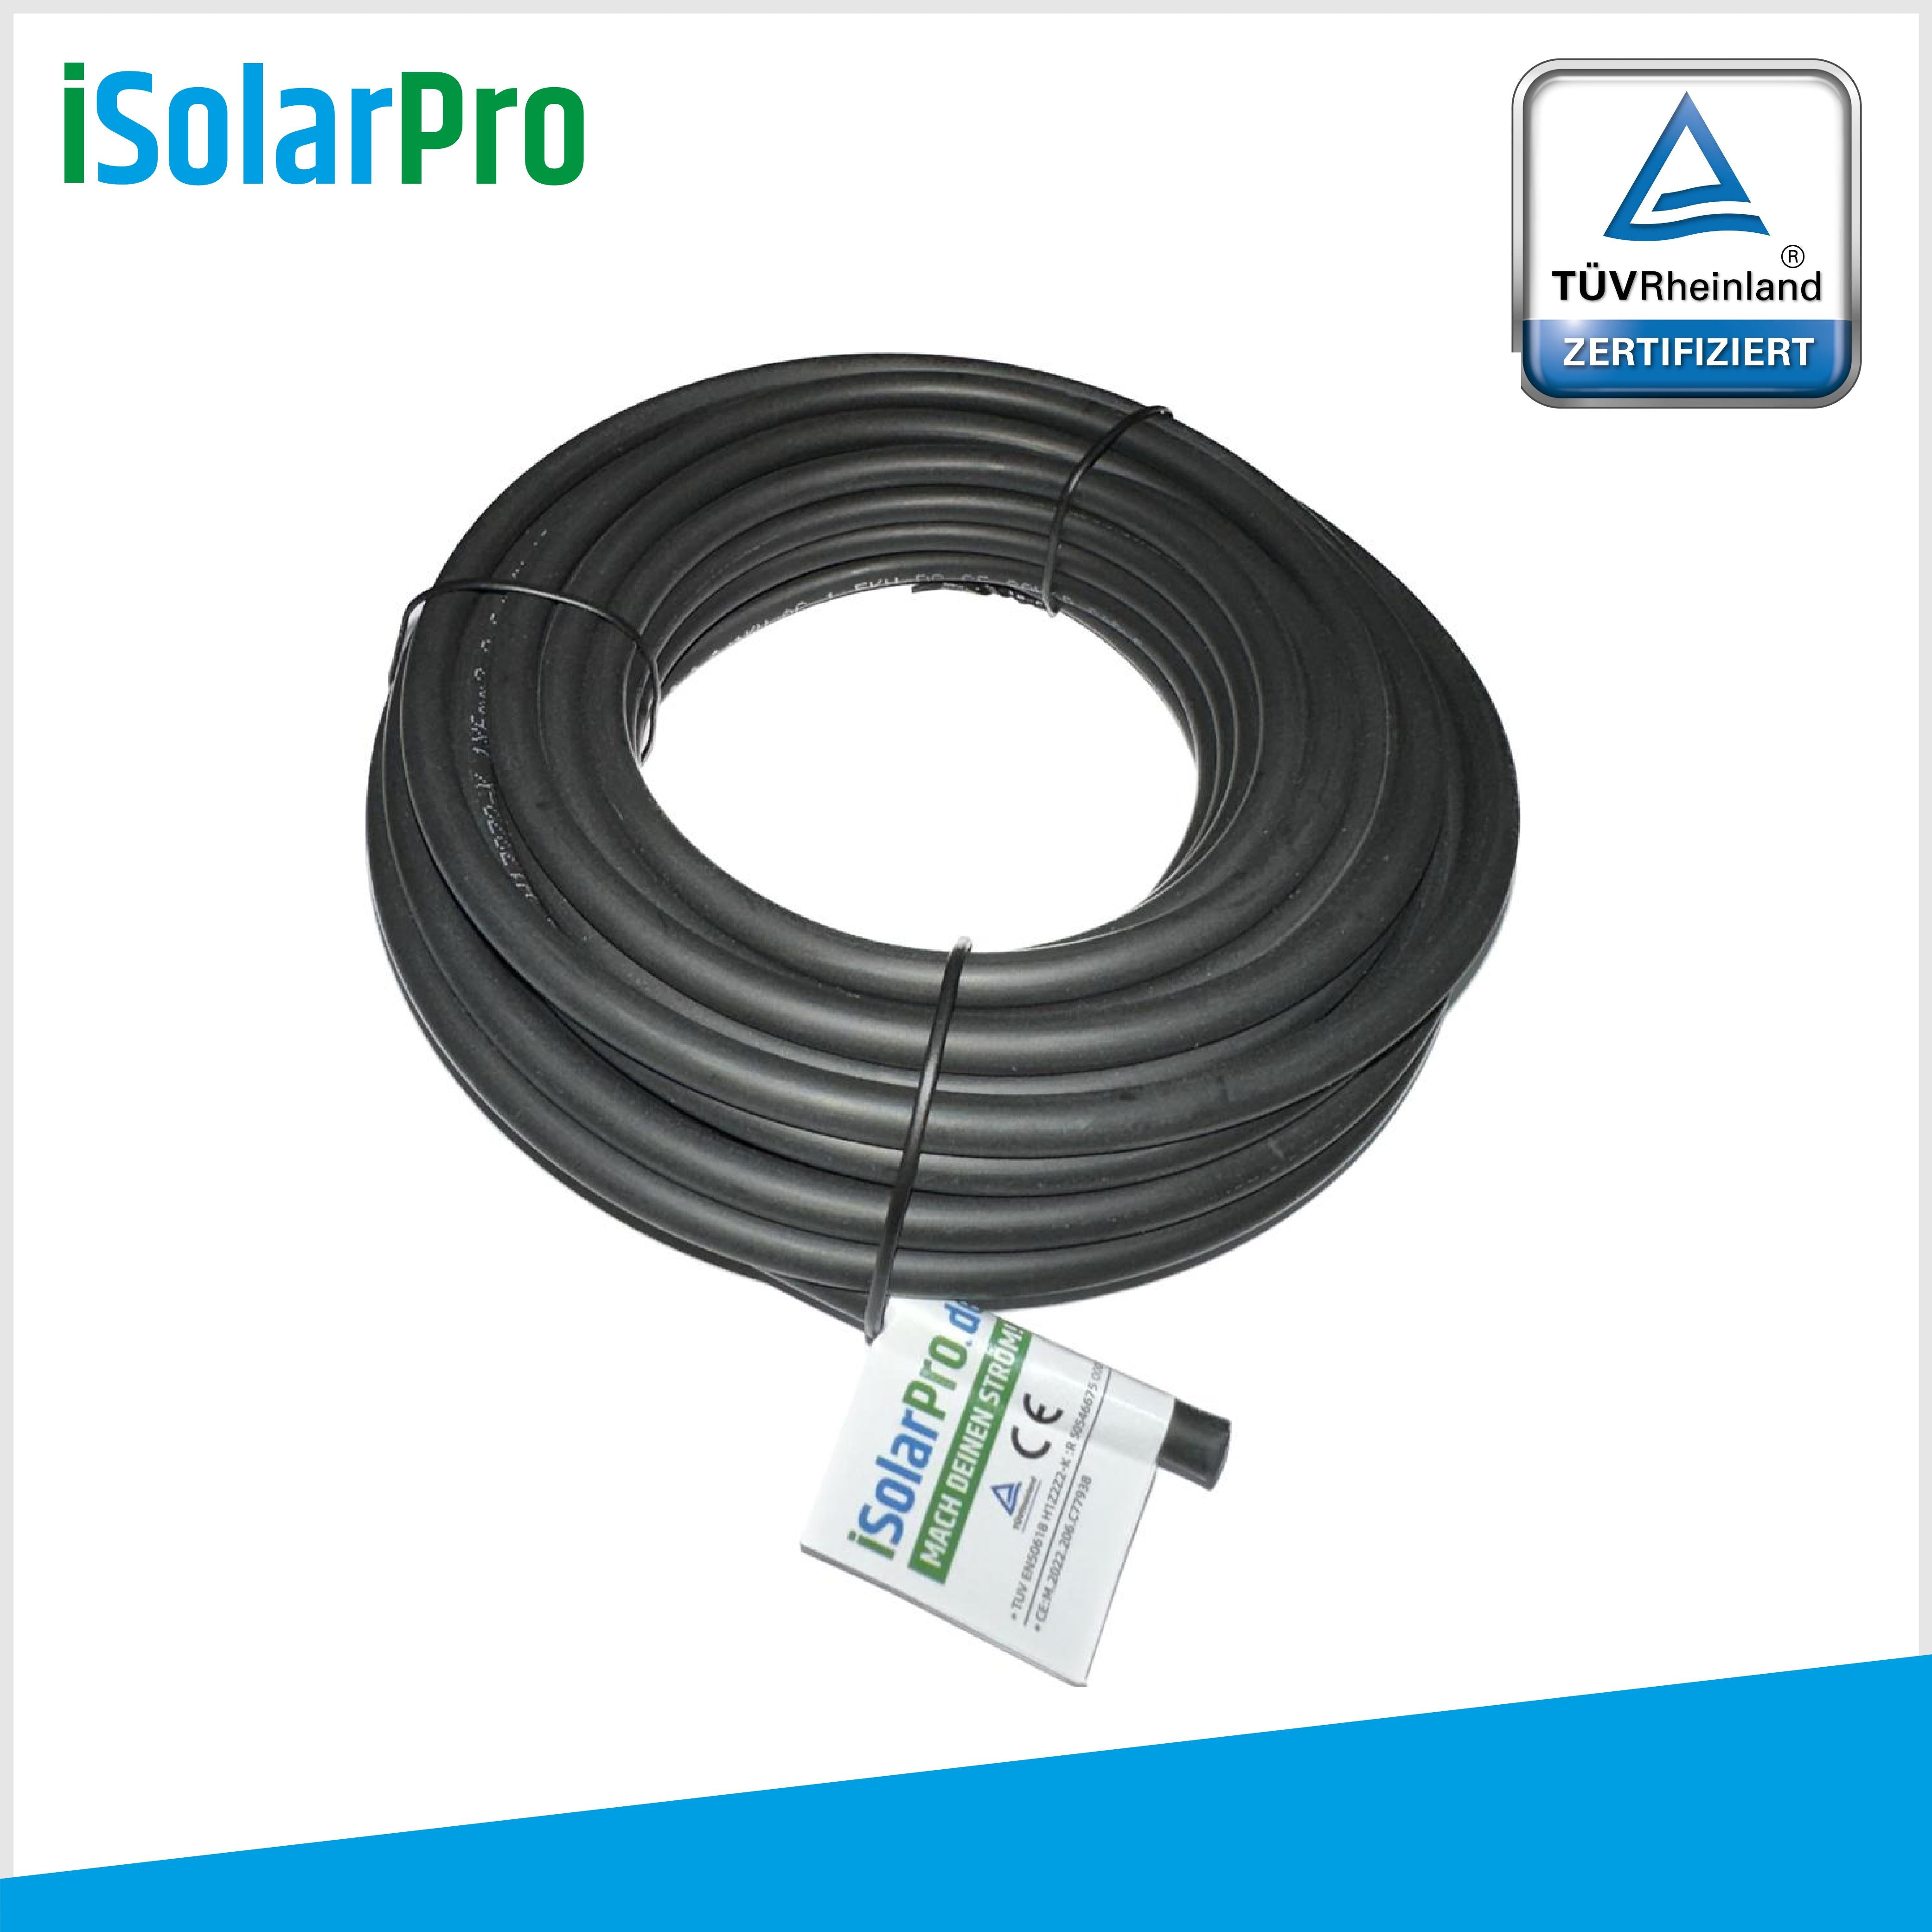 10m Solarkabel 6 mm² Photovoltaik Kabel für PV Anlagen schwarz